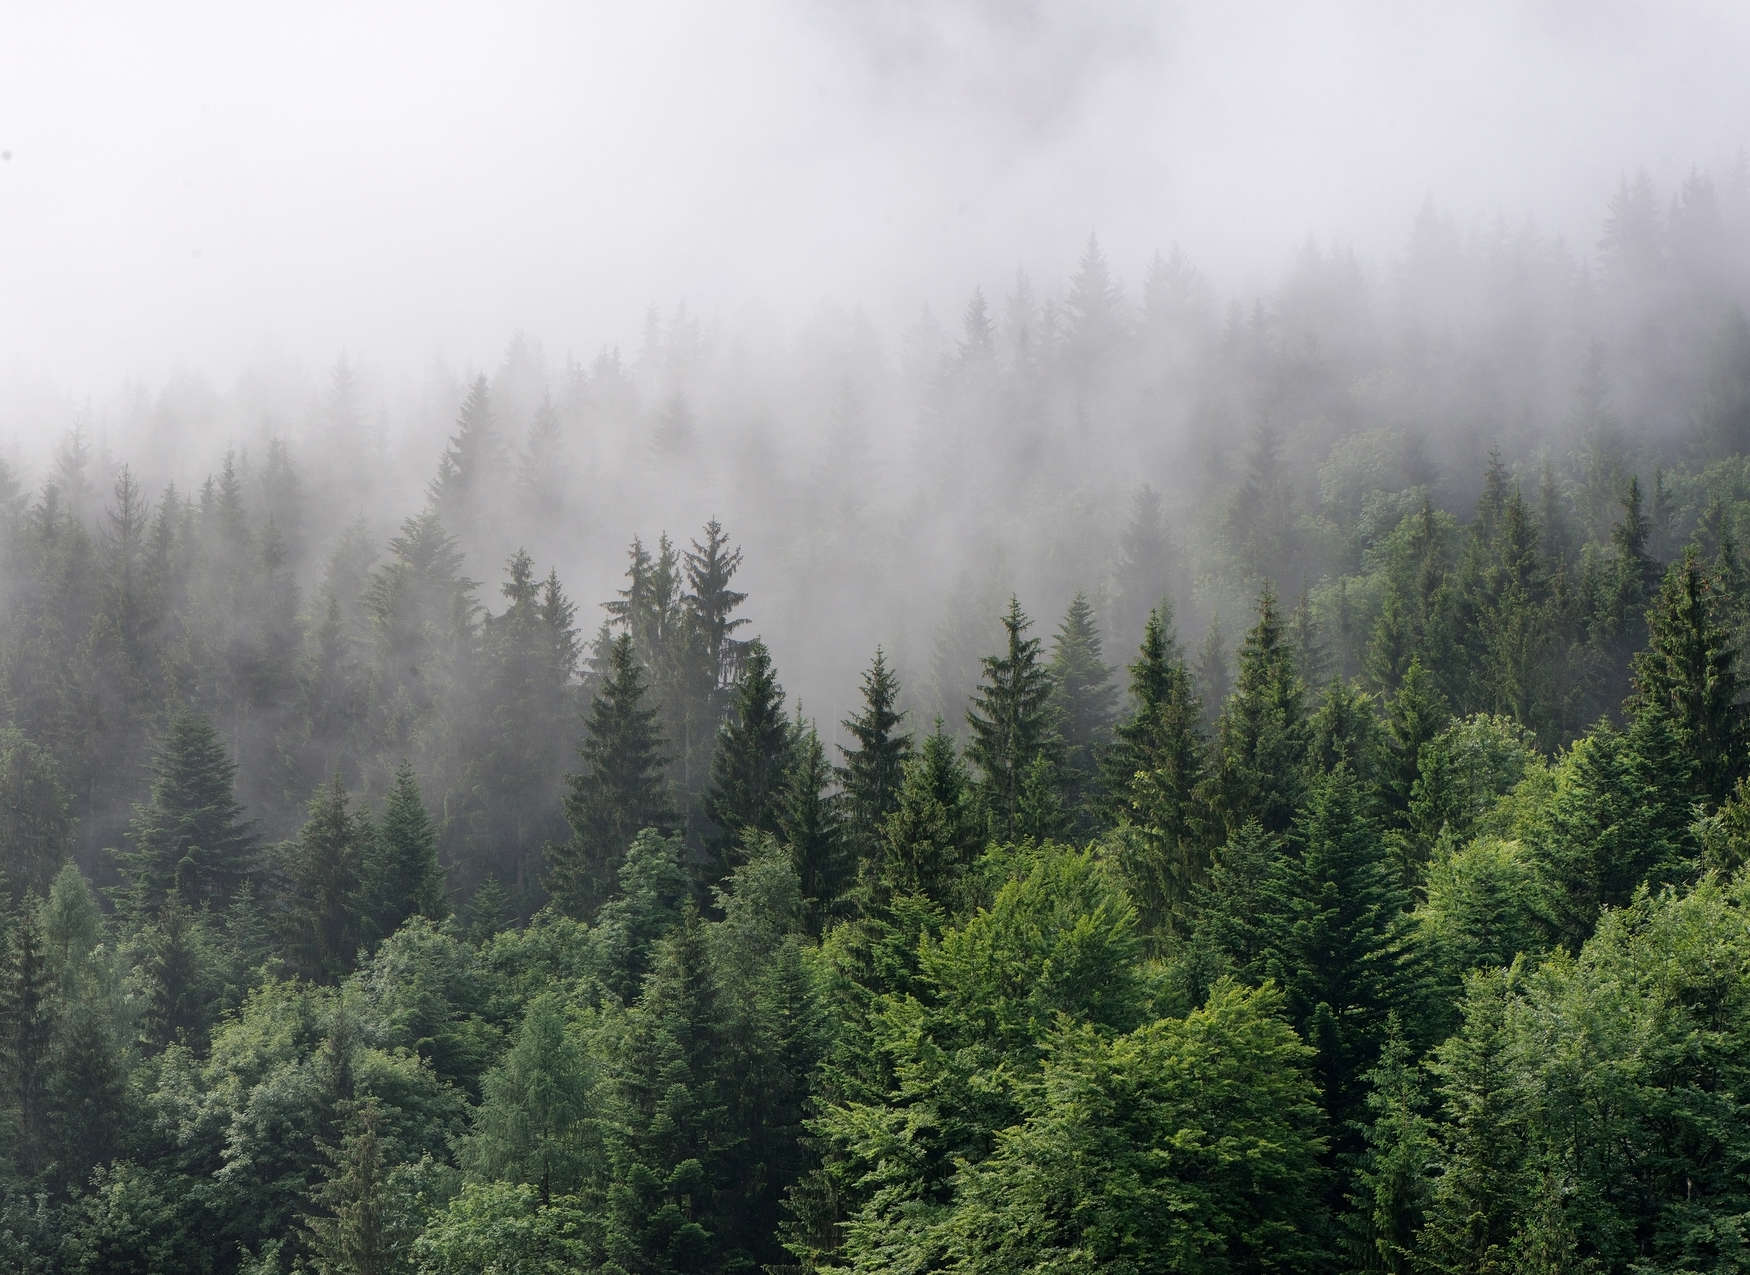             Forêt vue d'en haut par un jour de brouillard - Vert, Blanc
        